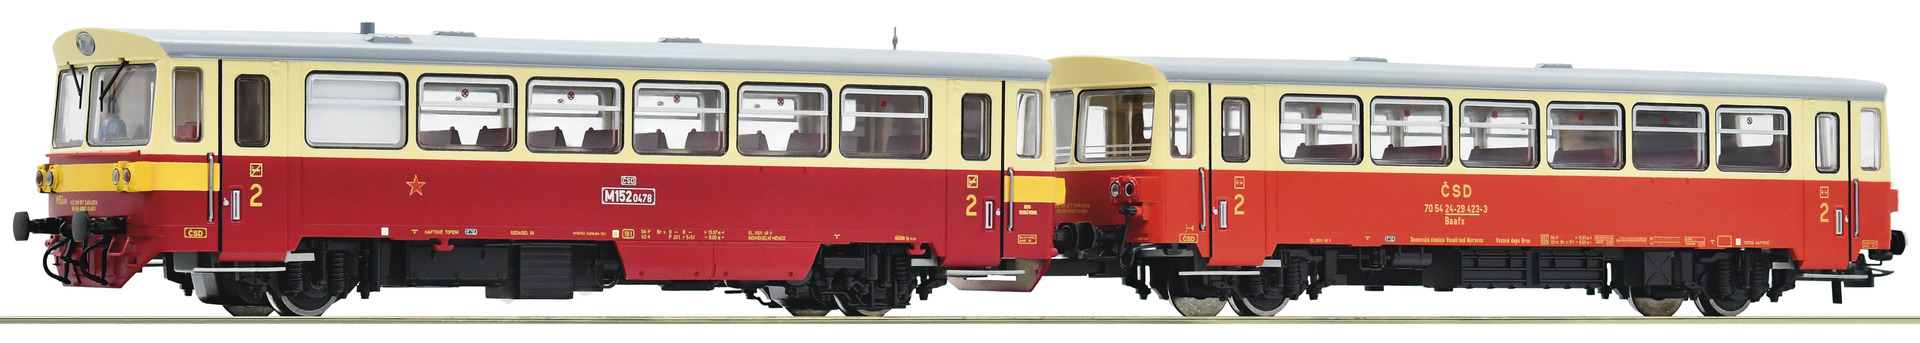 Roco 70374  Diesel railcar class M 152.0 with trailer, CSD